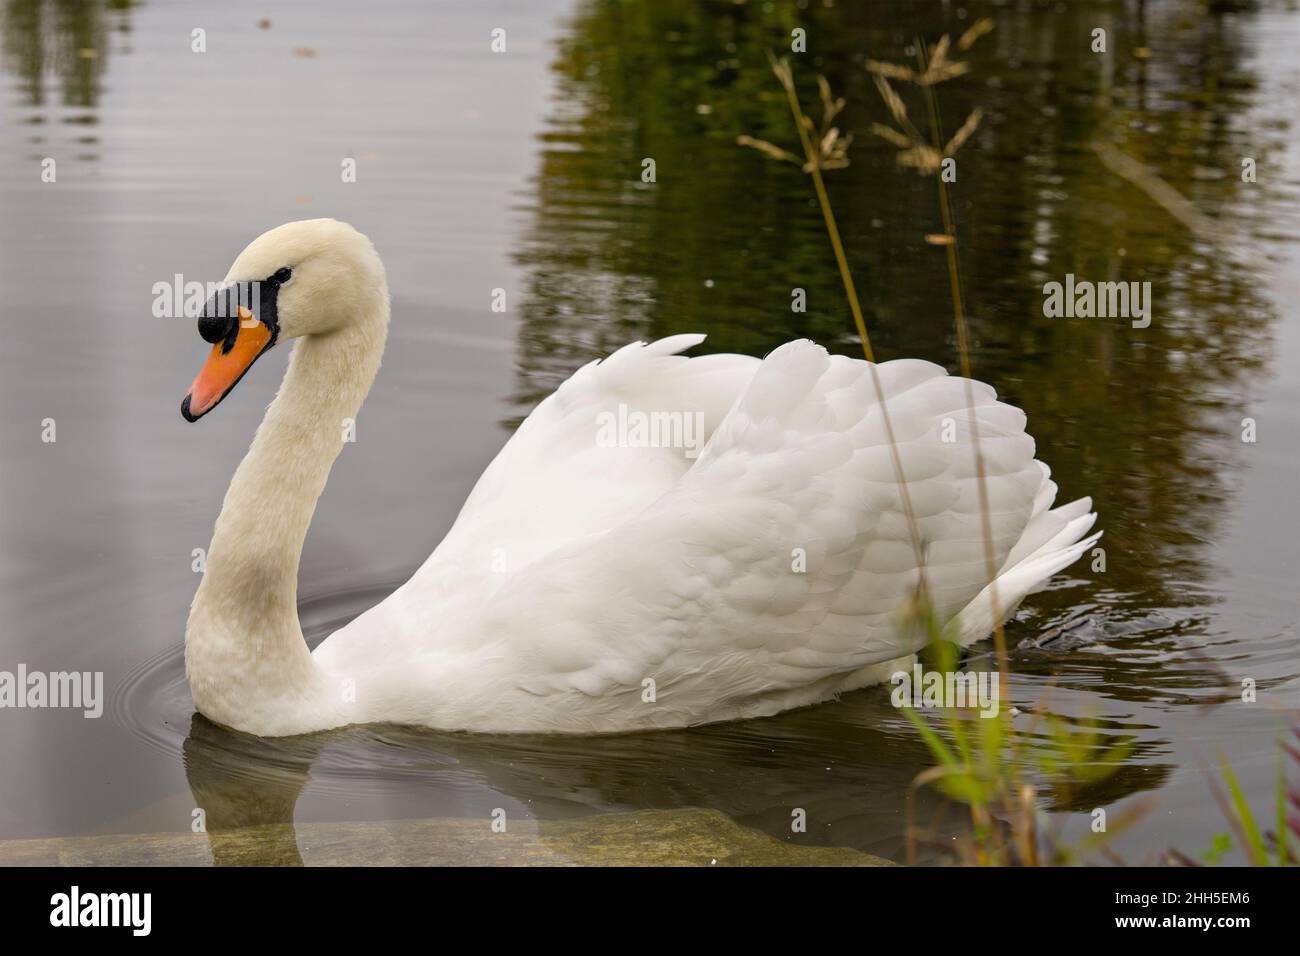 Swan Mute oiseau nageant avec des ailes blanches étendues avec fond d'eau dans son environnement et son habitat environnant.Portrait.Image.Image.Photo. Banque D'Images